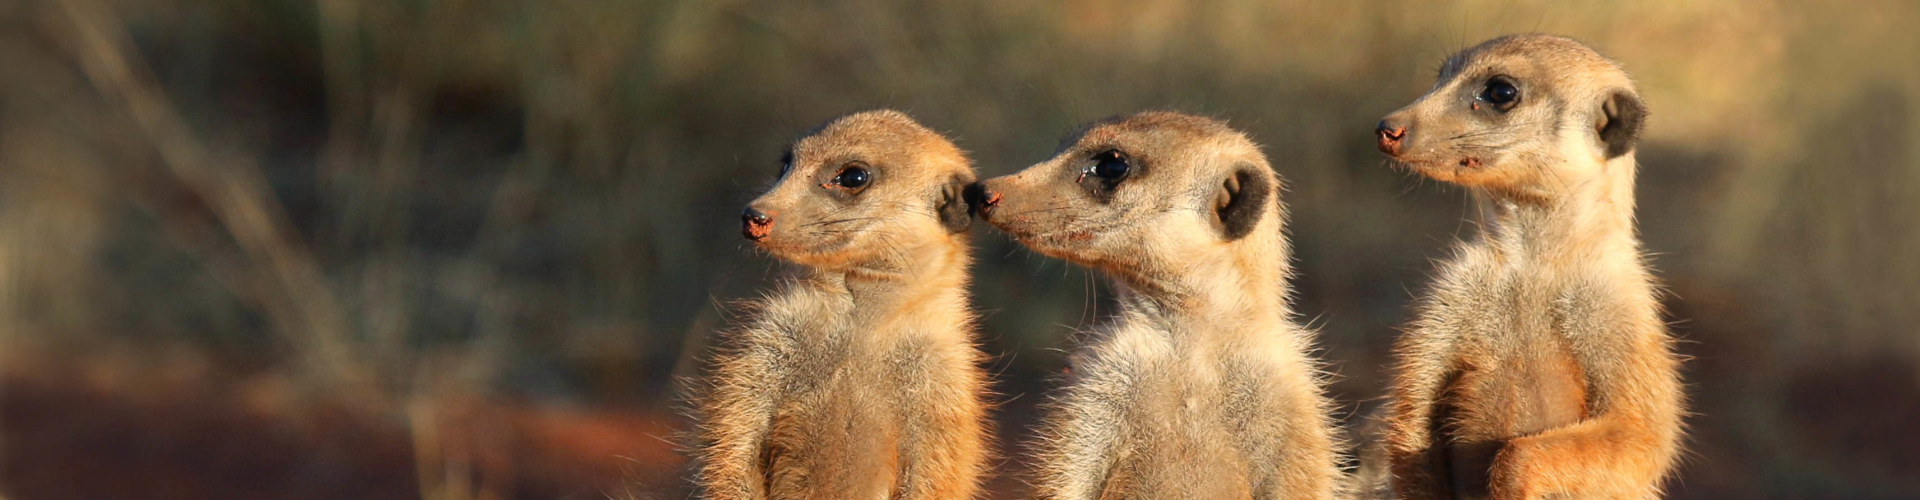 meerkatten-spotten-in-zuid-afrika